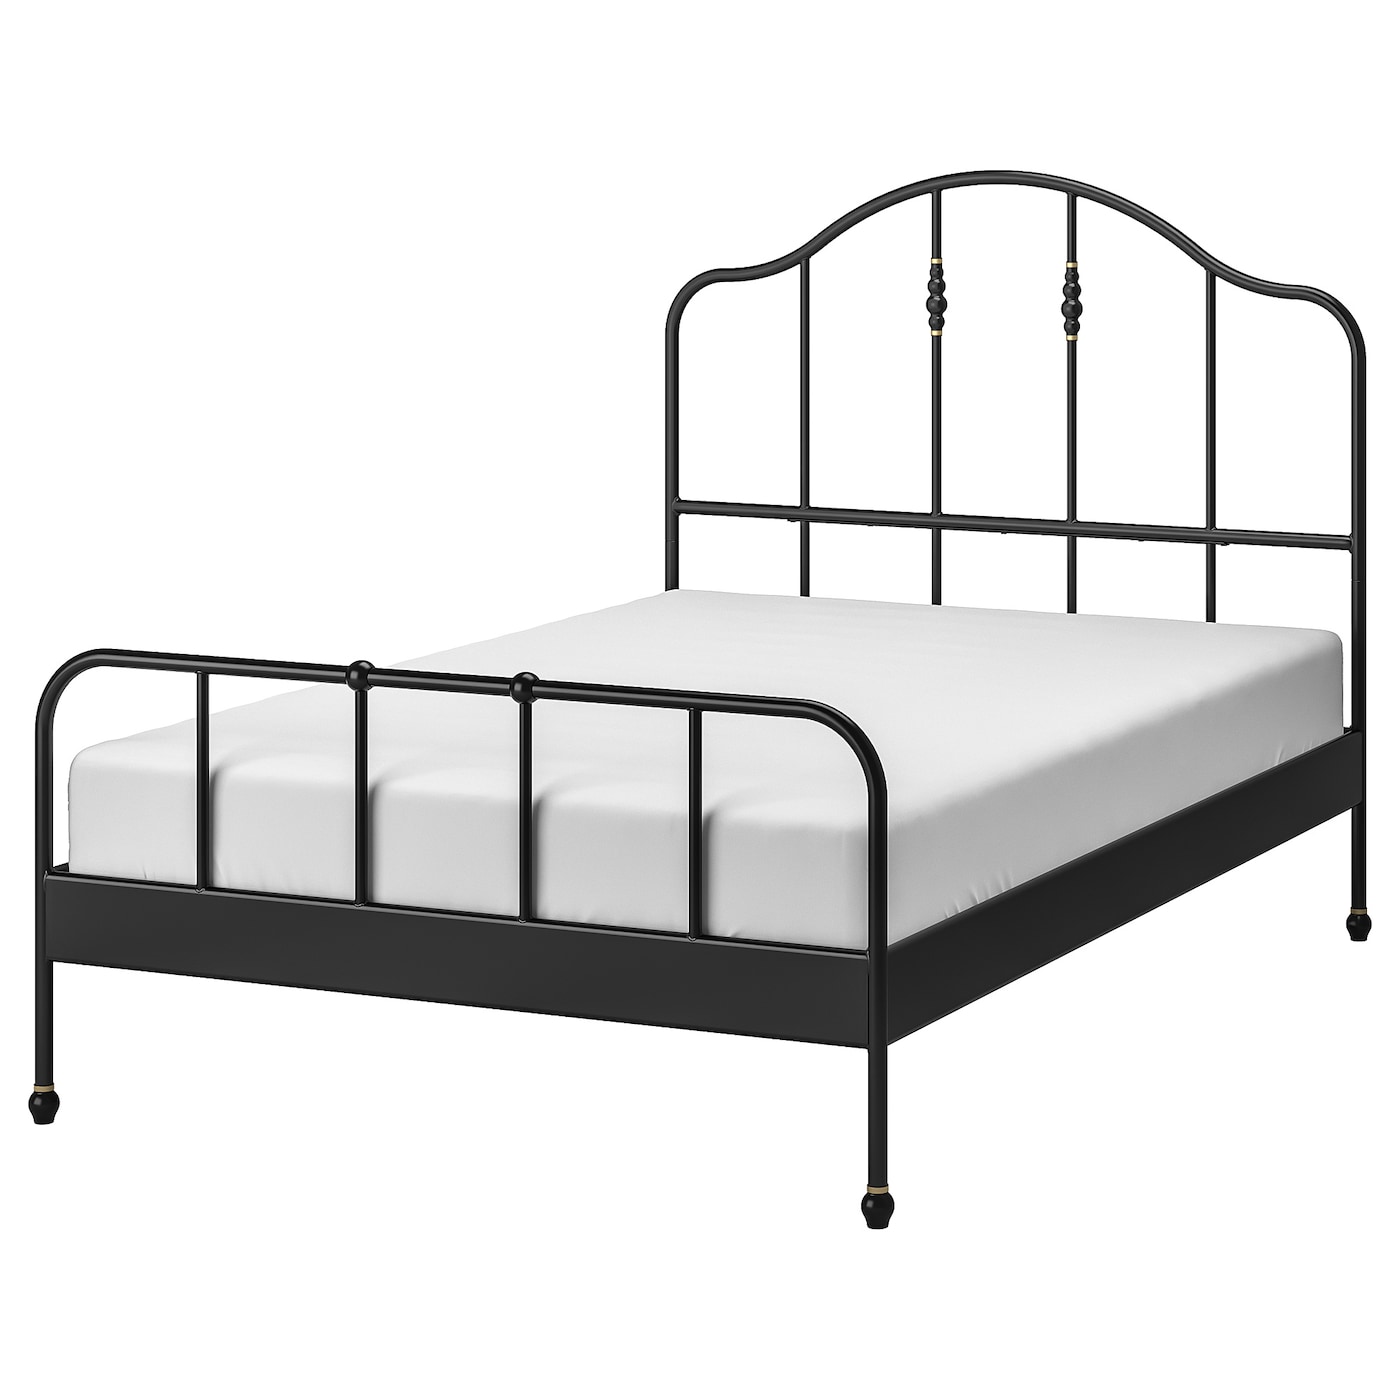 Каркас кровати - IKEA SAGSTUA, 200х140 см, черный, САГСТУА ИКЕА